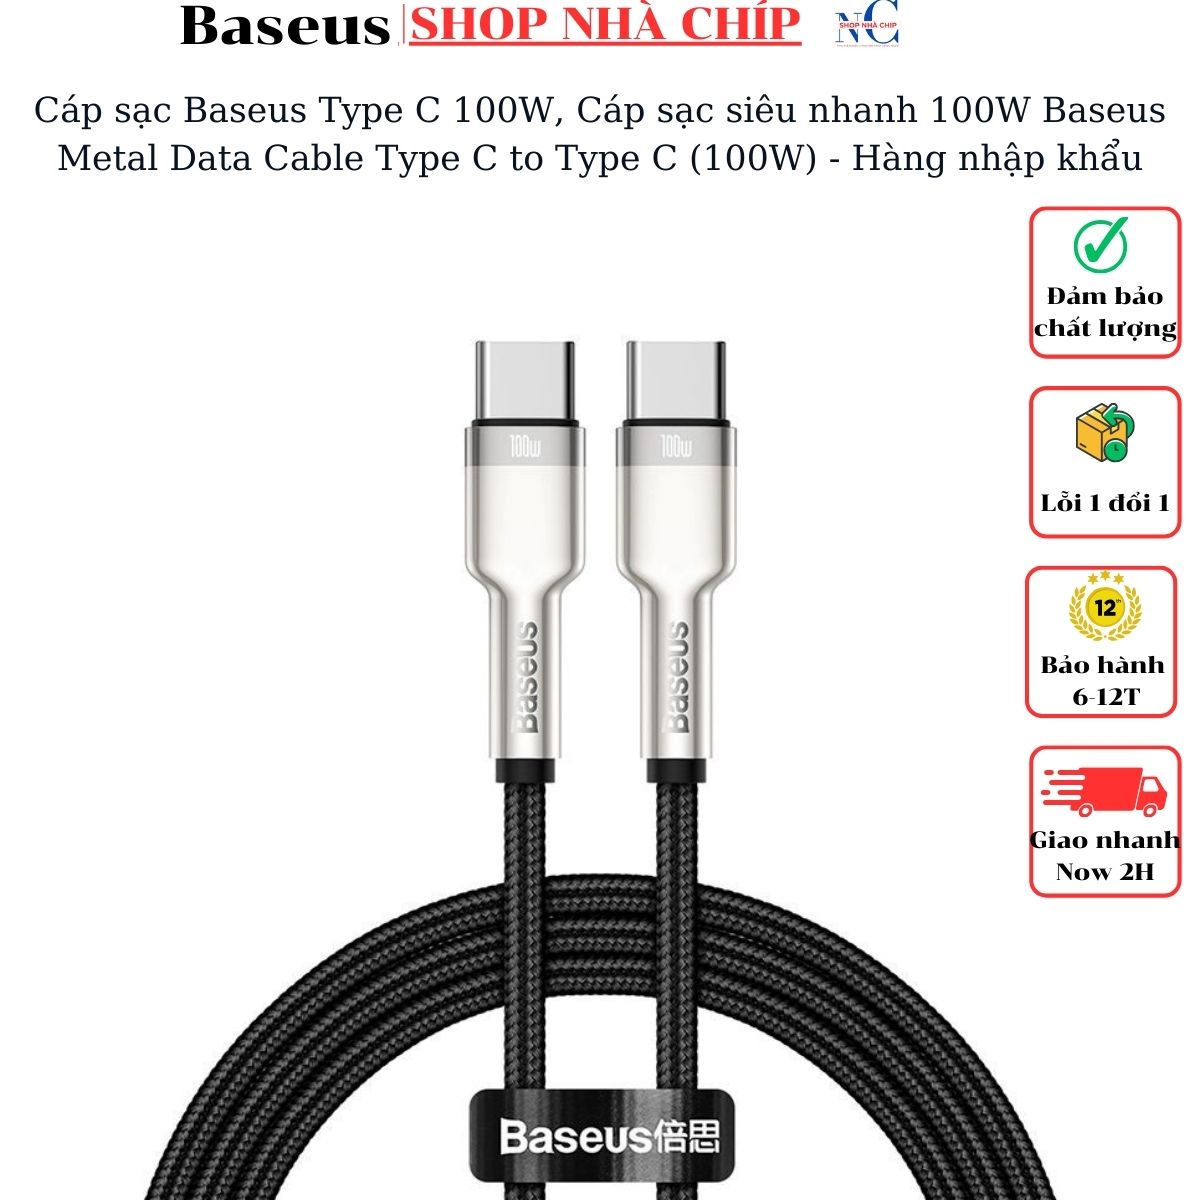 Cáp sạc Baseus Type C 100W, Cáp sạc siêu nhanh 100W Baseus Metal Data Cable Type C to Type C (100W) - Hàng nhập khẩu